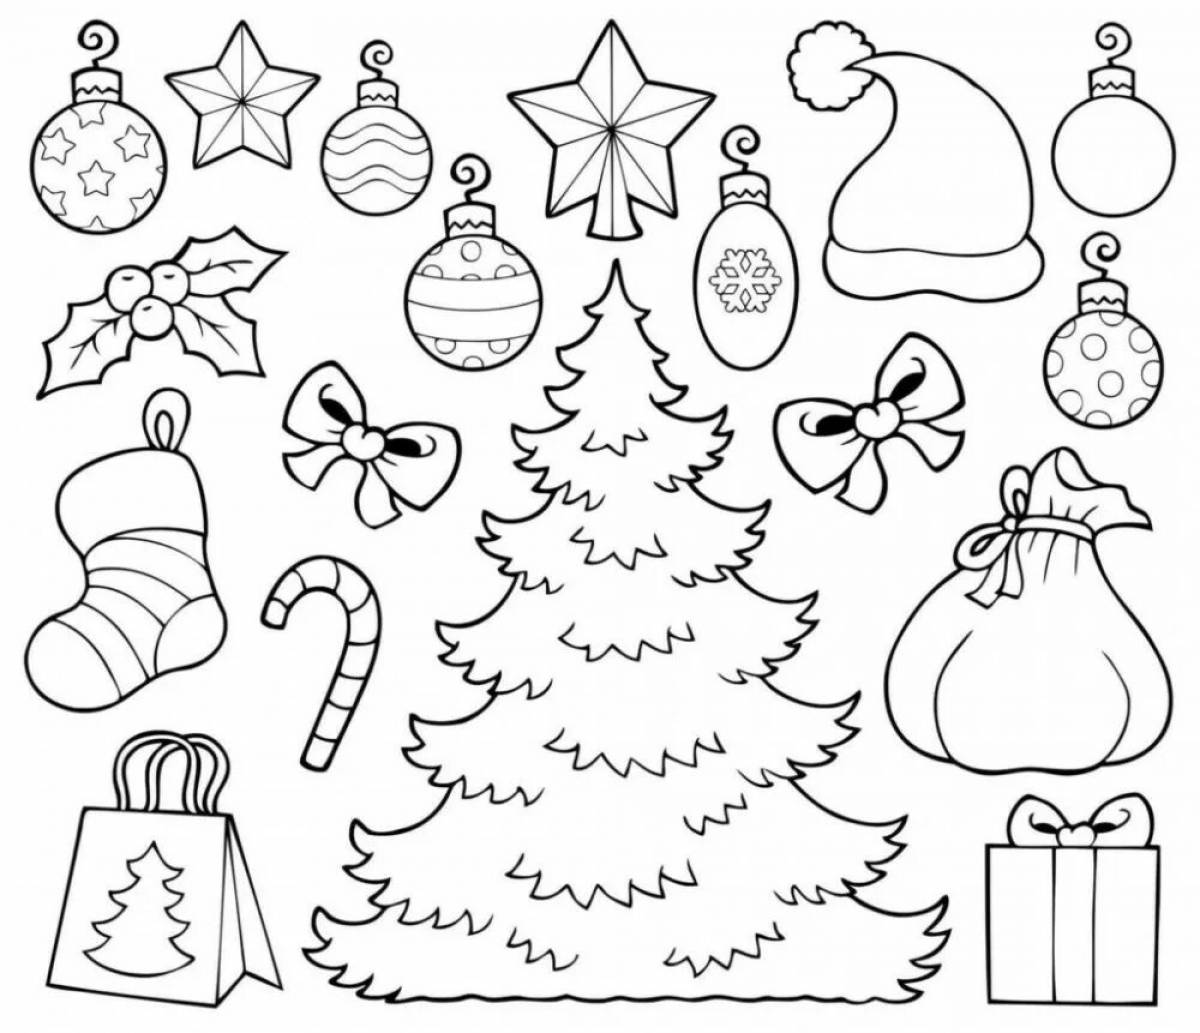 Small Christmas drawings #1